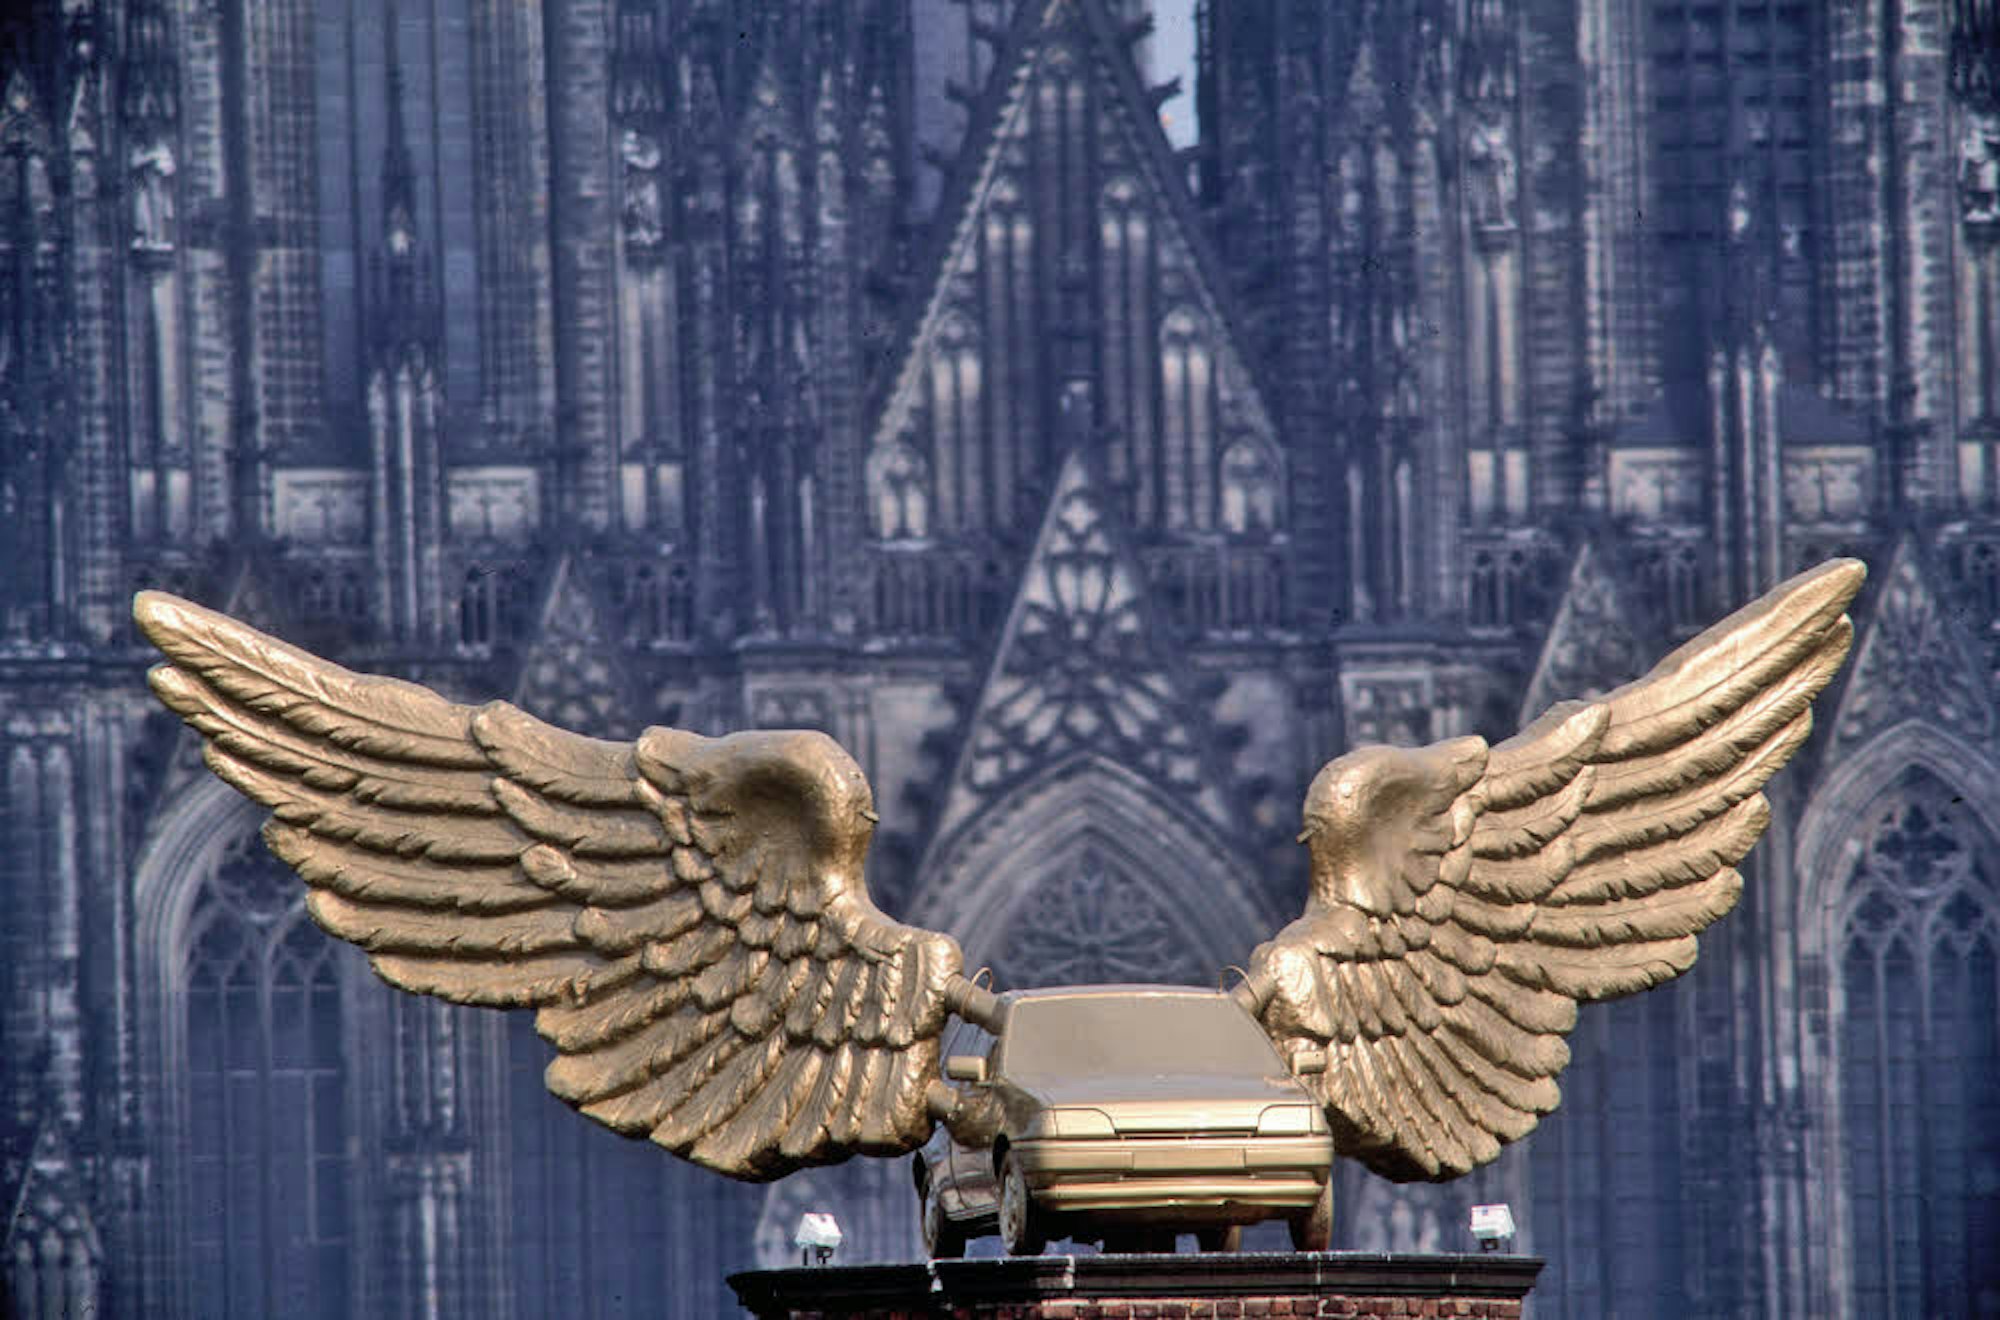 Aktionskünstler HA Schult verleiht dem Fiesta Flügel, heute steht das Objekt auf dem Kölnischen Stadtmuseum.